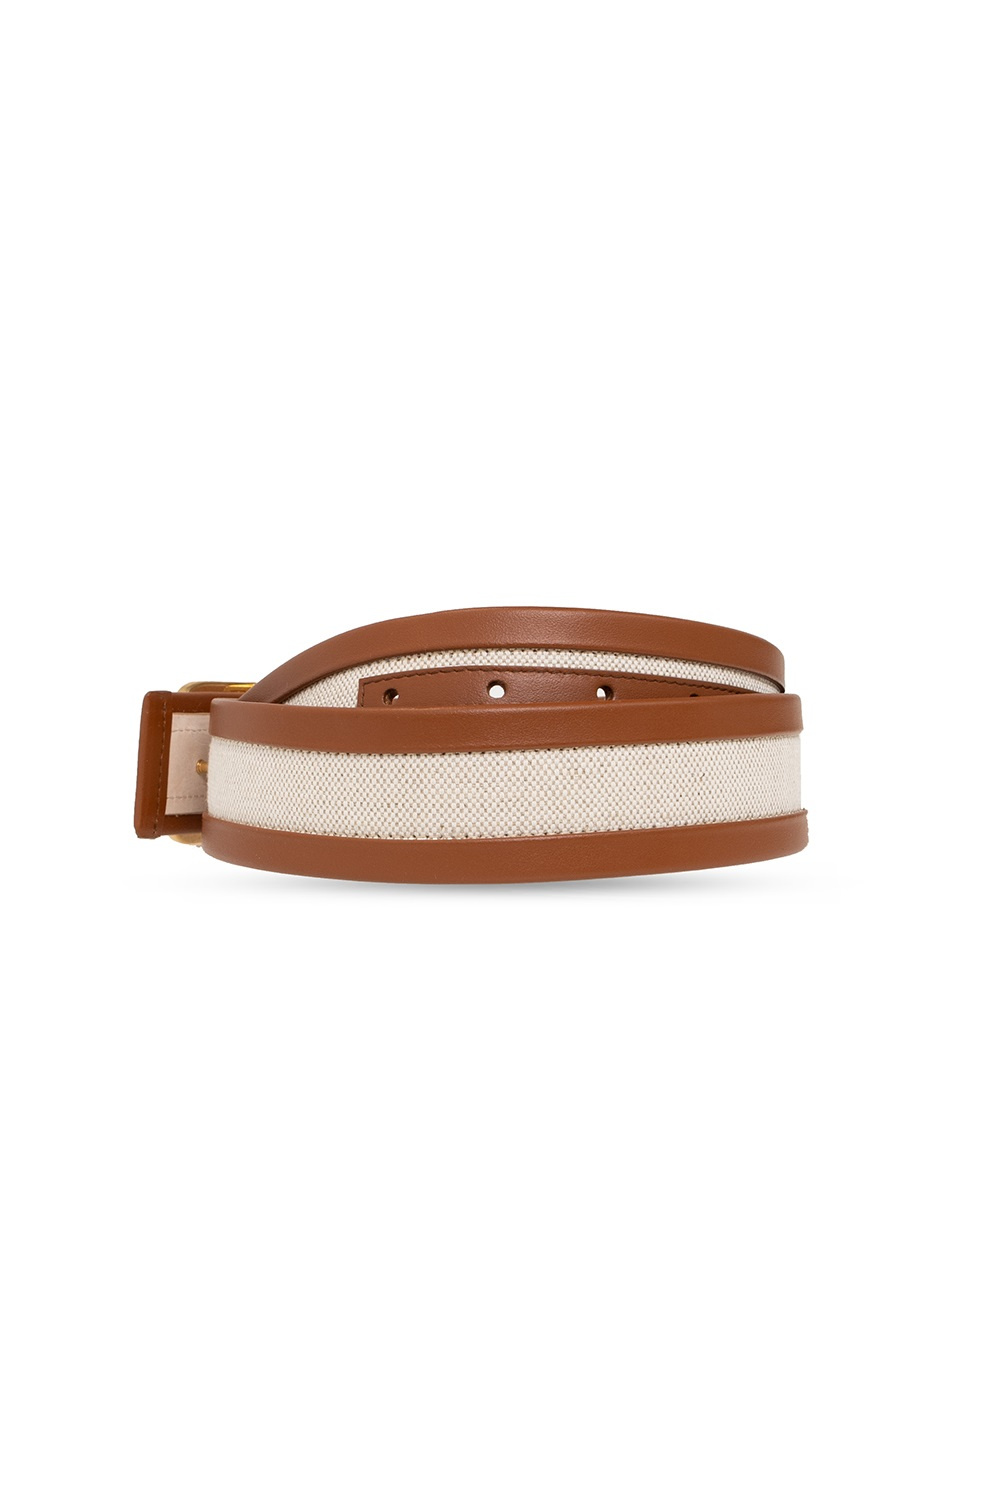 Balmain ‘B-Belt’ belt with logo